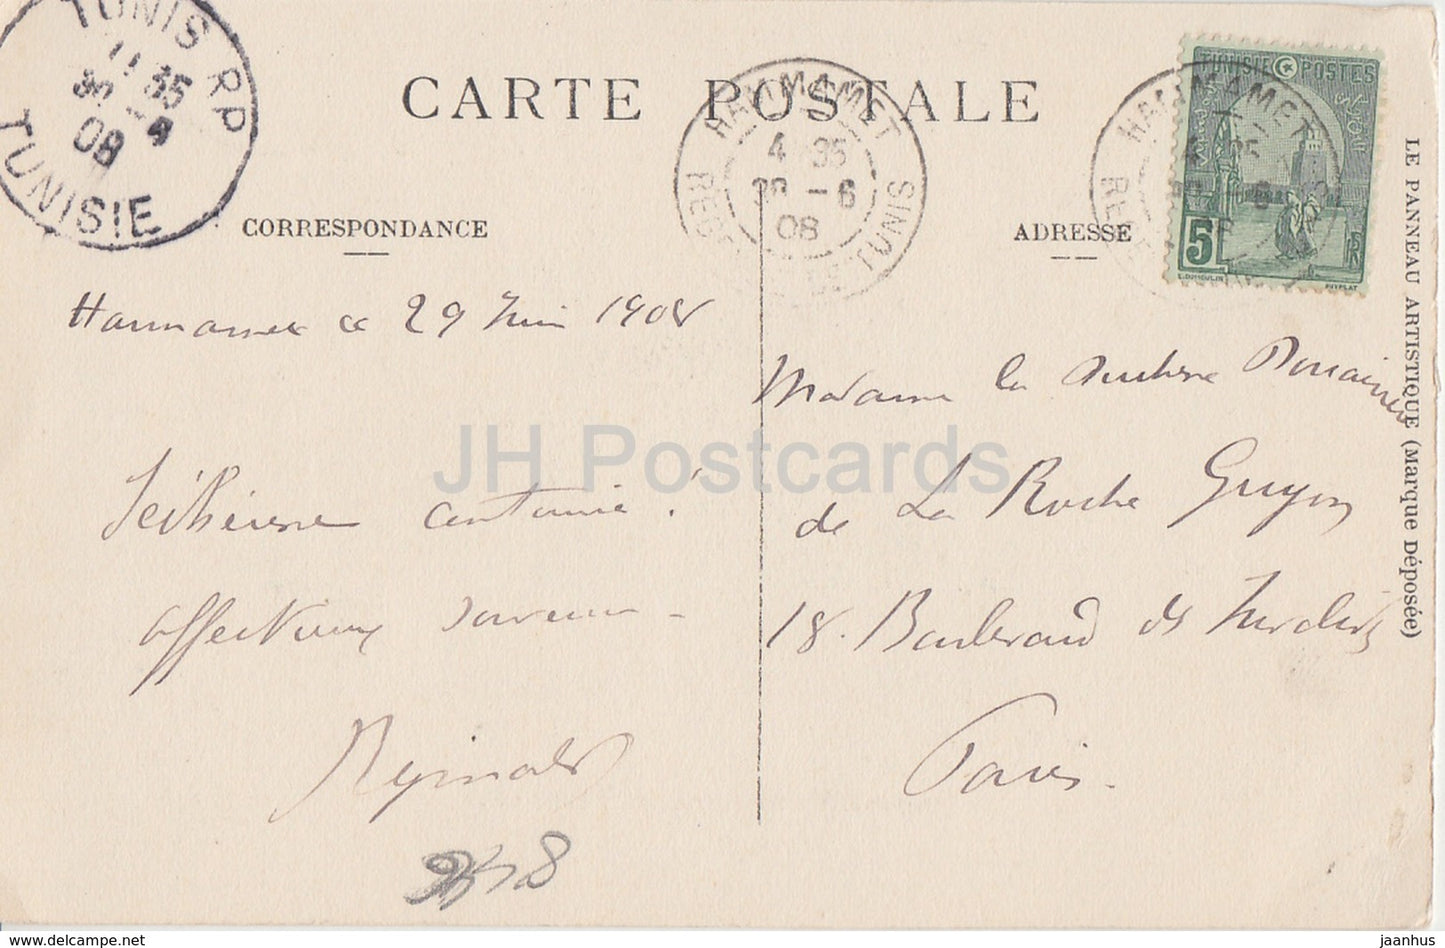 Tunesien - Notables se rendant a la campagne - 249 - alte Postkarte - 1908 - Tunesien - gebraucht